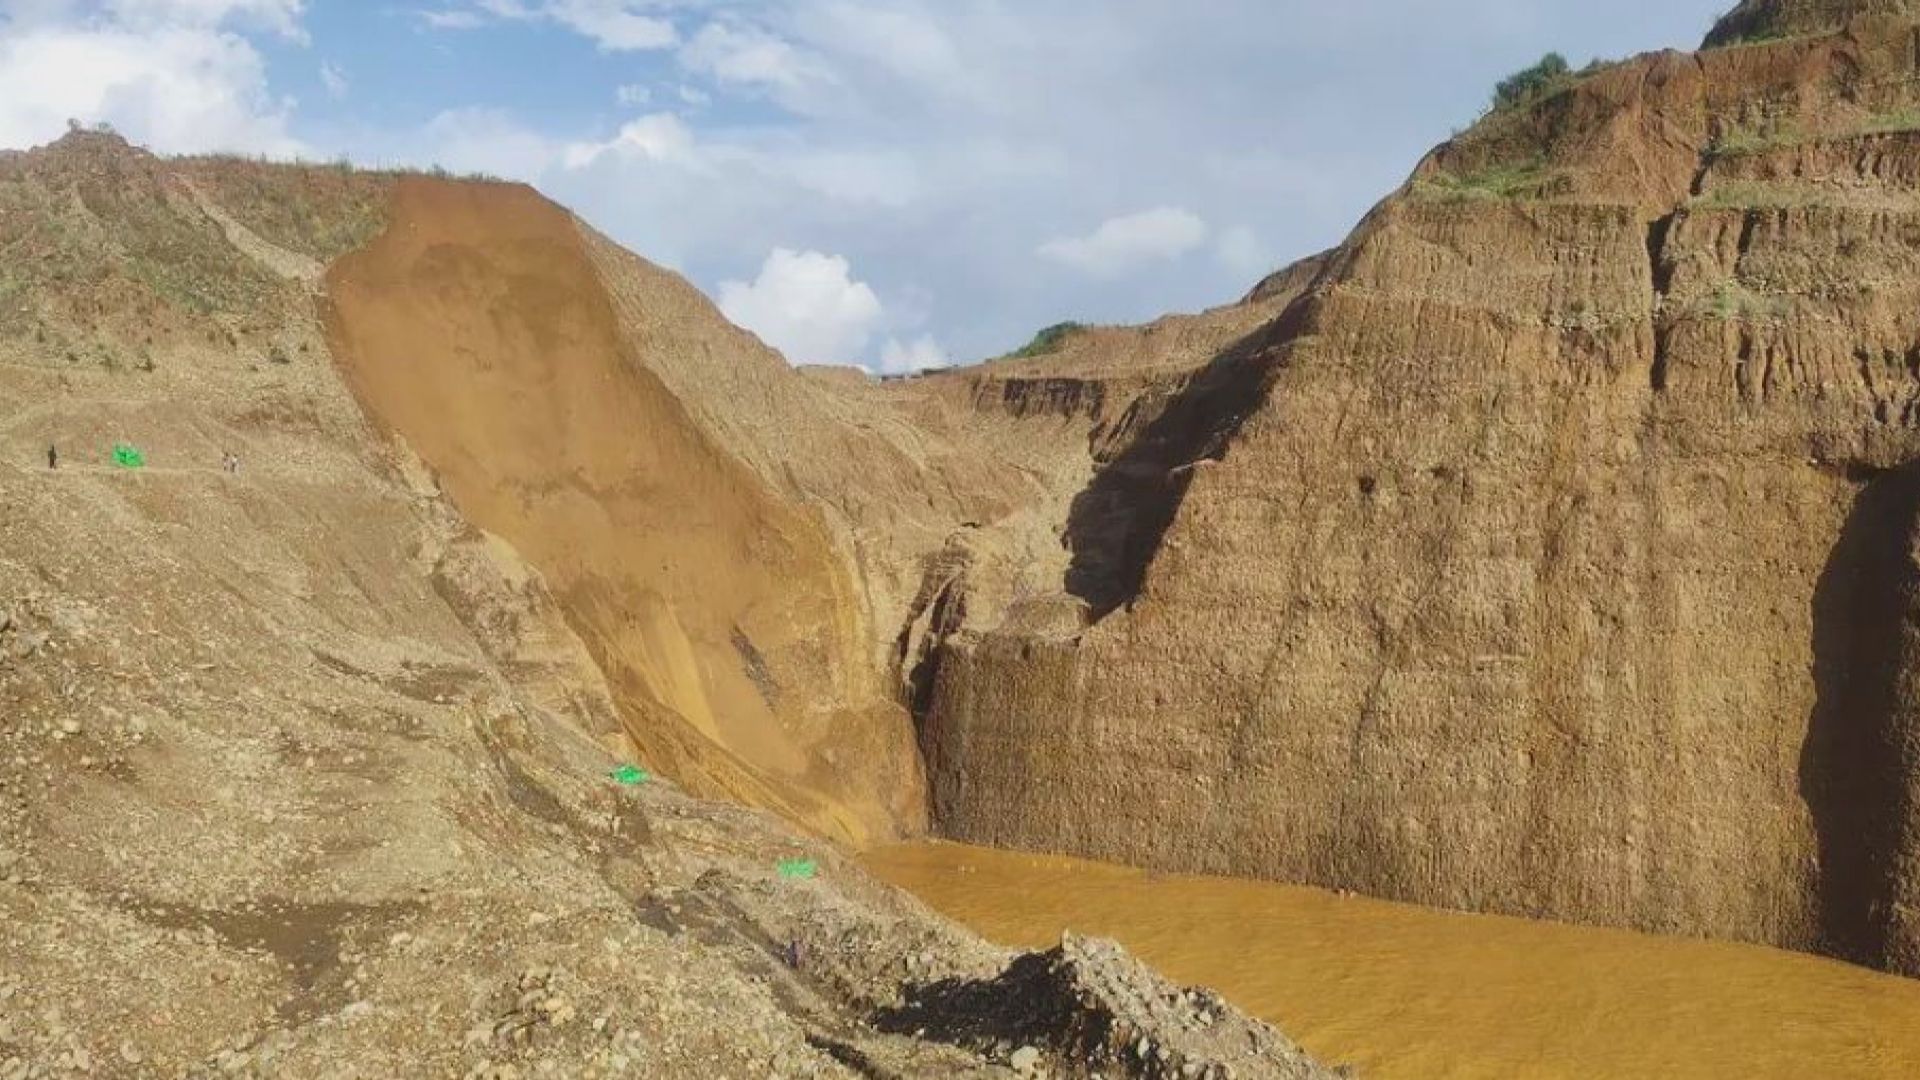 緬甸北部玉石礦場山泥傾瀉 至少36人失蹤